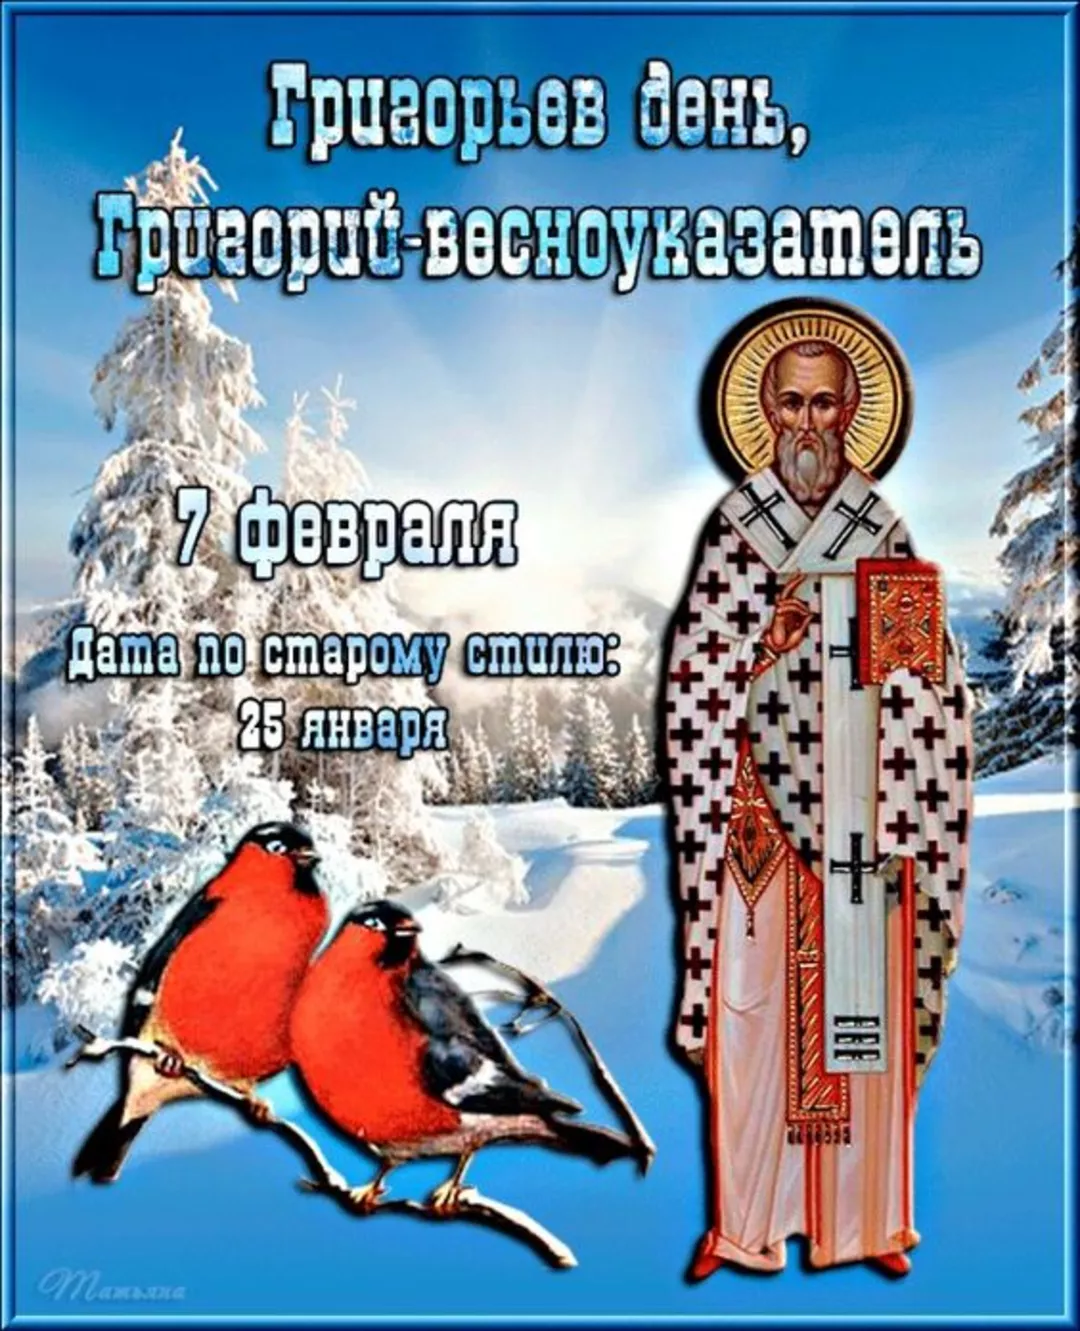 Григорьев день, Григорий – весноуказатель